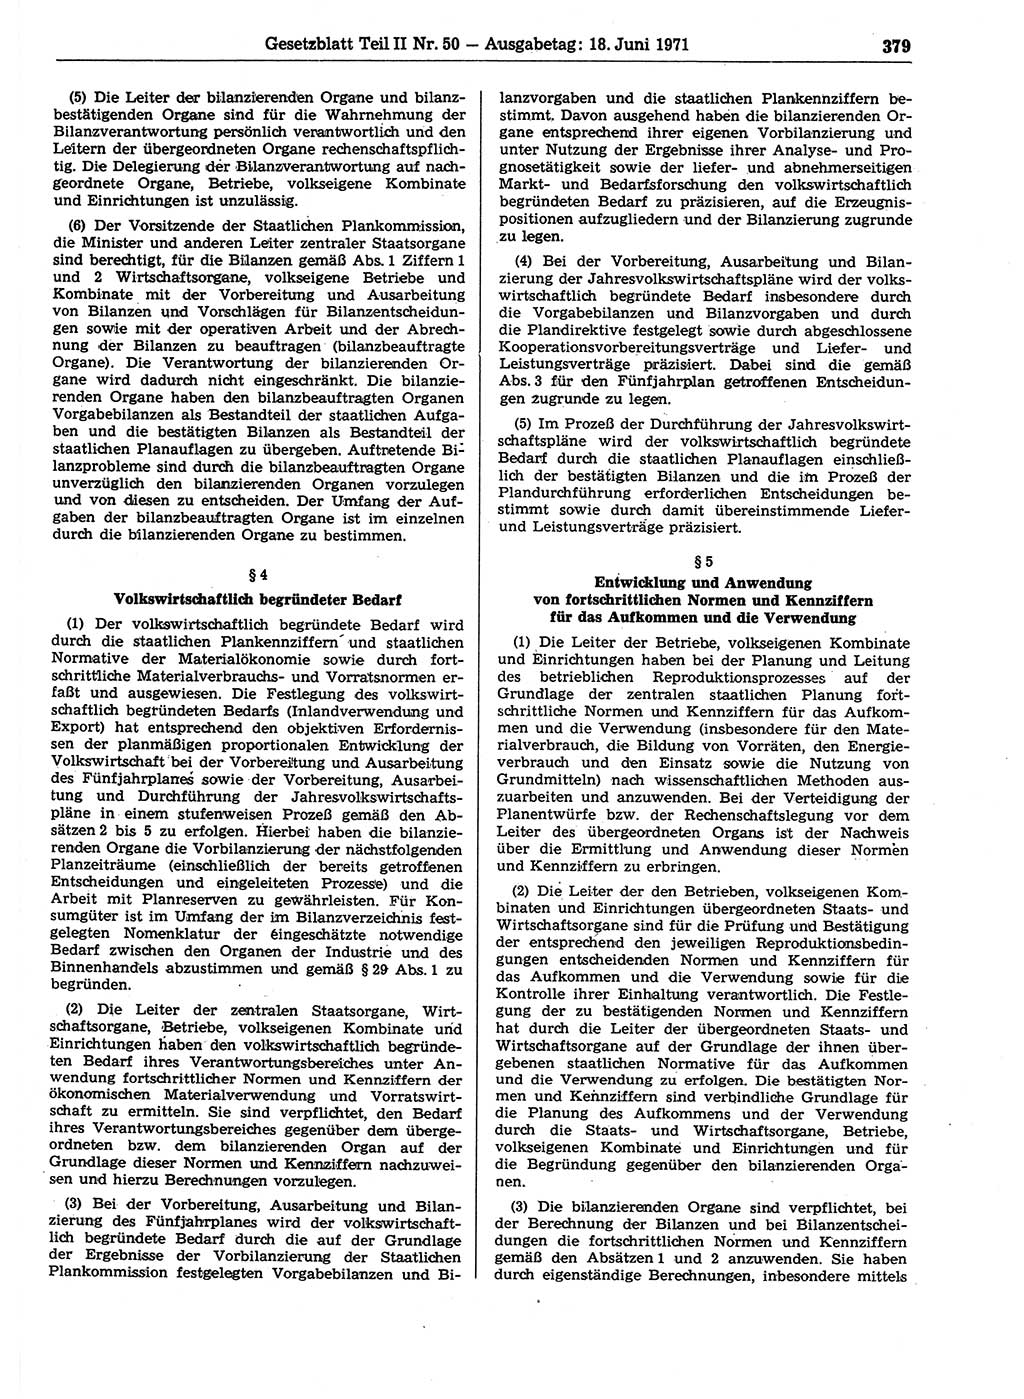 Gesetzblatt (GBl.) der Deutschen Demokratischen Republik (DDR) Teil ⅠⅠ 1971, Seite 379 (GBl. DDR ⅠⅠ 1971, S. 379)